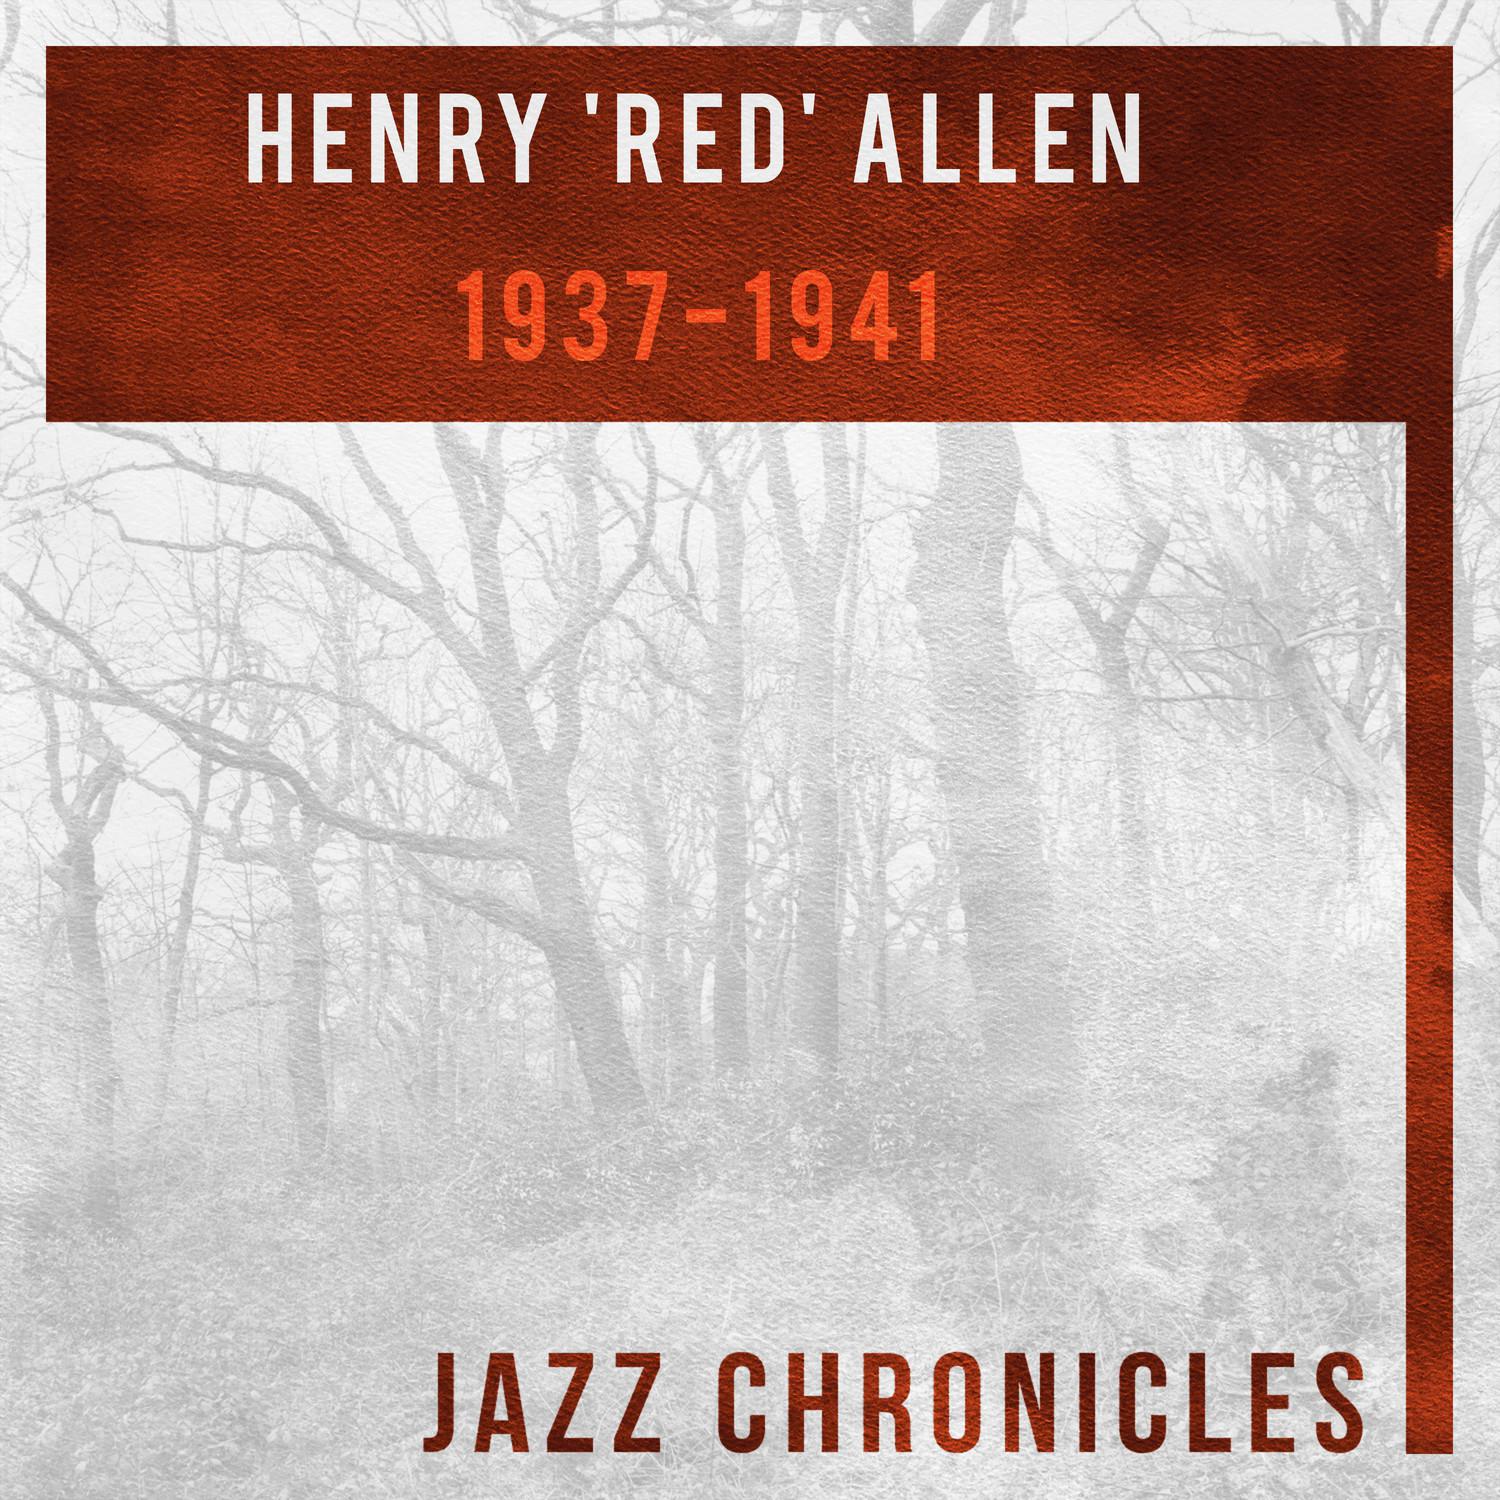 Henry 'Red' Allen: 1937-1941